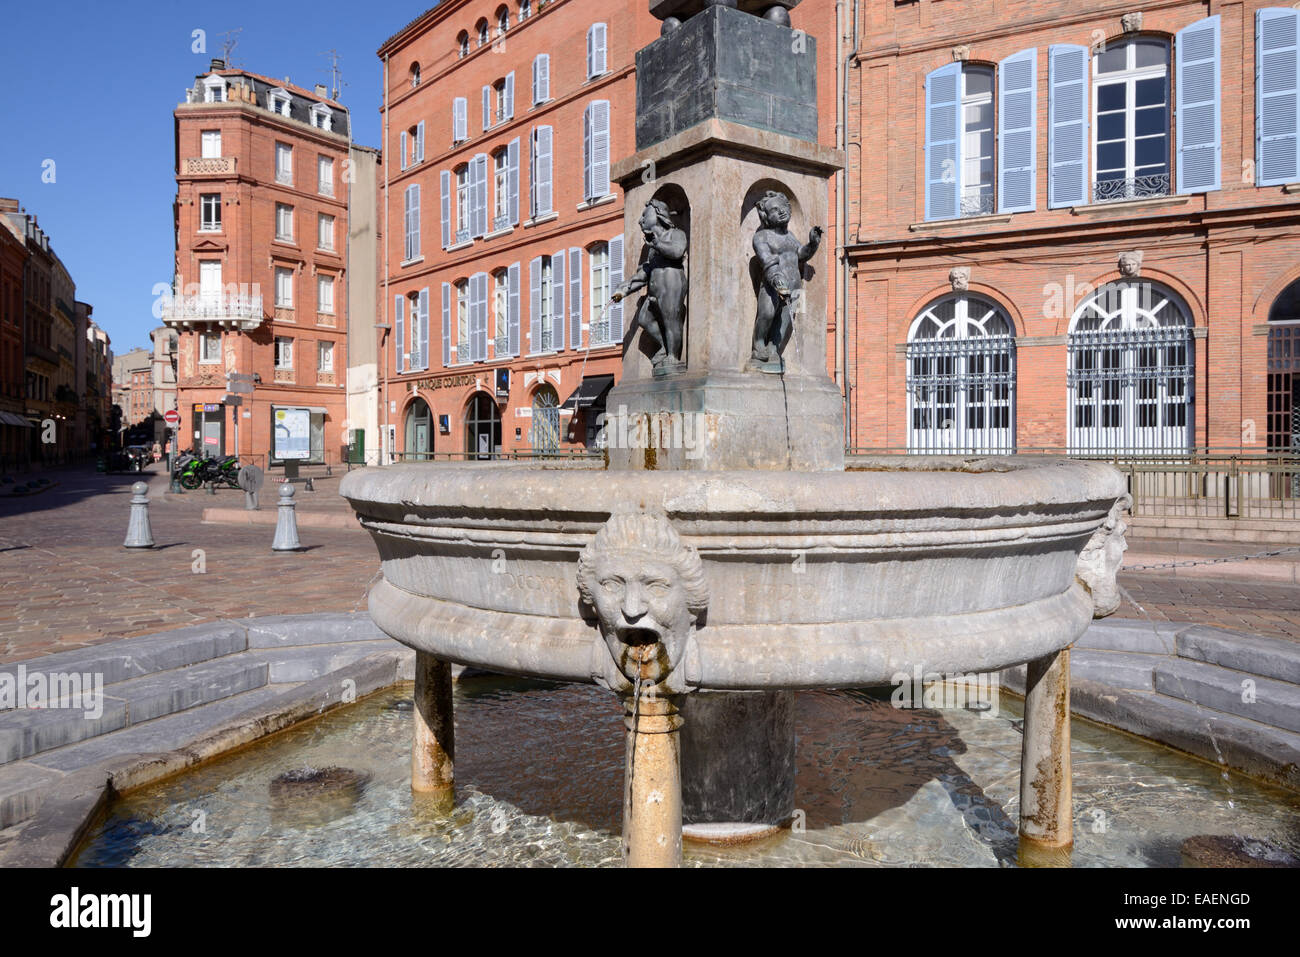 Fontaine de la rue en place Etienne ou Town Square et de l'architecture en brique rouge Toulouse France Banque D'Images